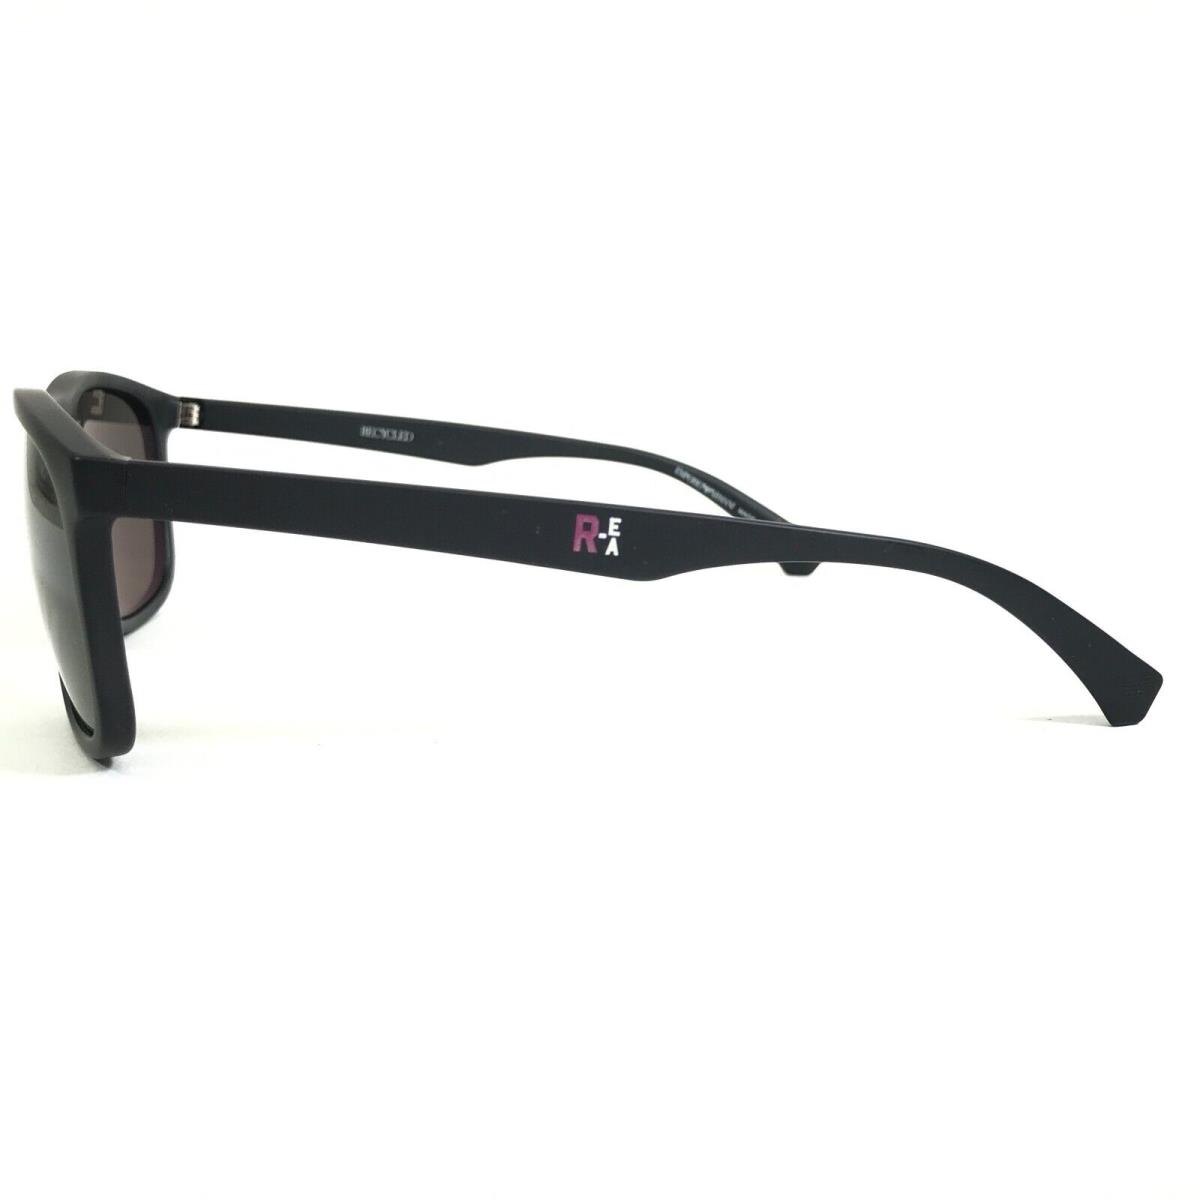 Emporio Armani sunglasses  - Black Frame, Gray Lens 5